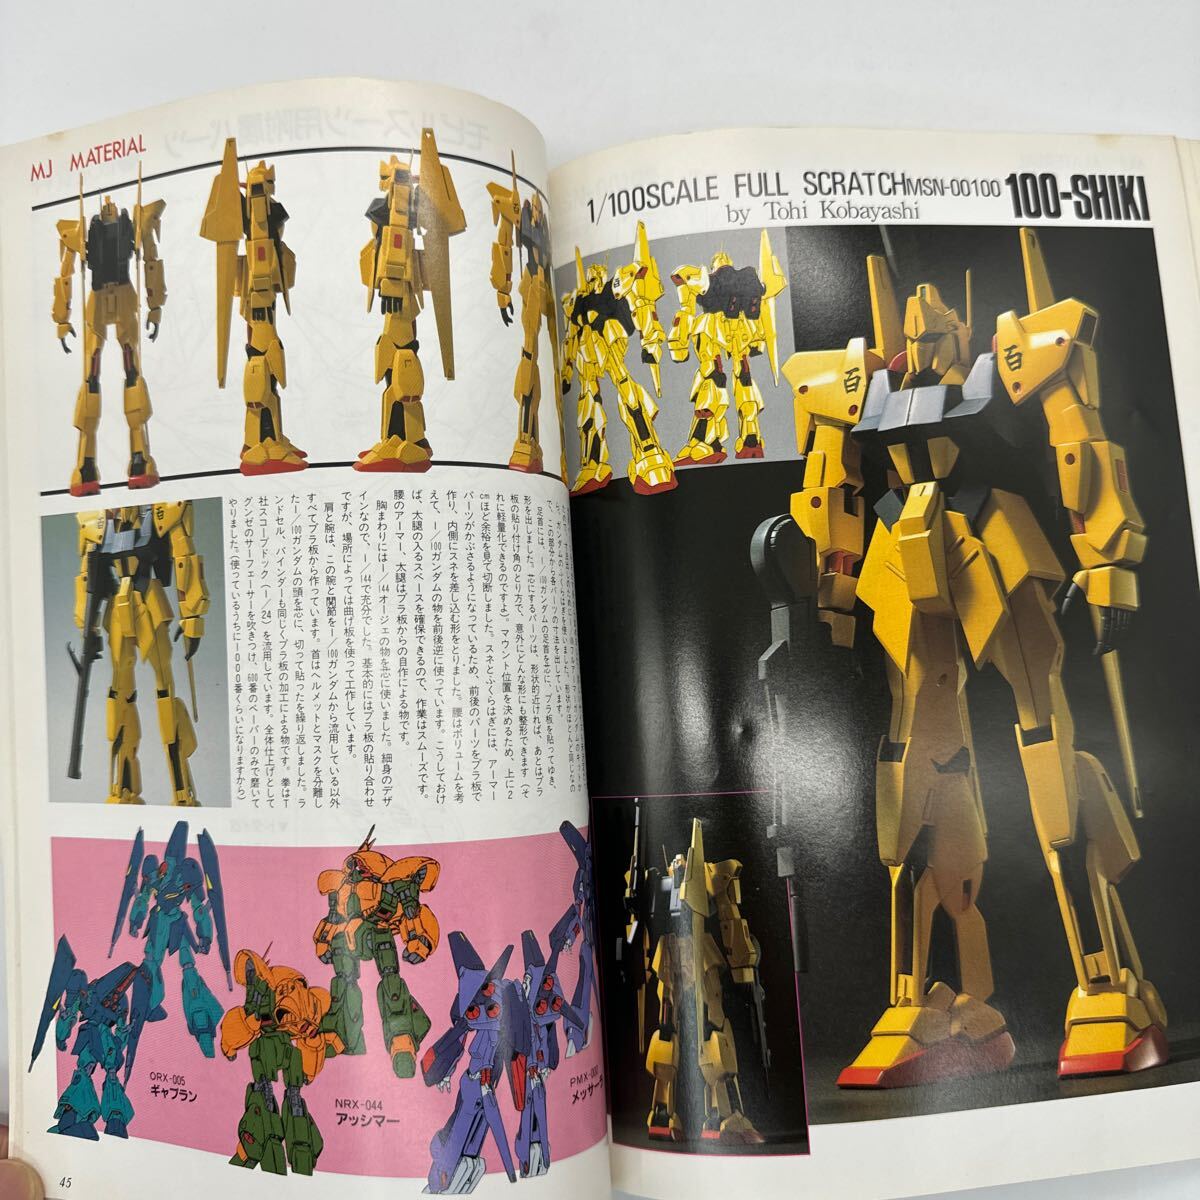  Mobile Suit Gundam пластиковая модель механизм nik установка сборник & произведение пример сборник MJ материал 